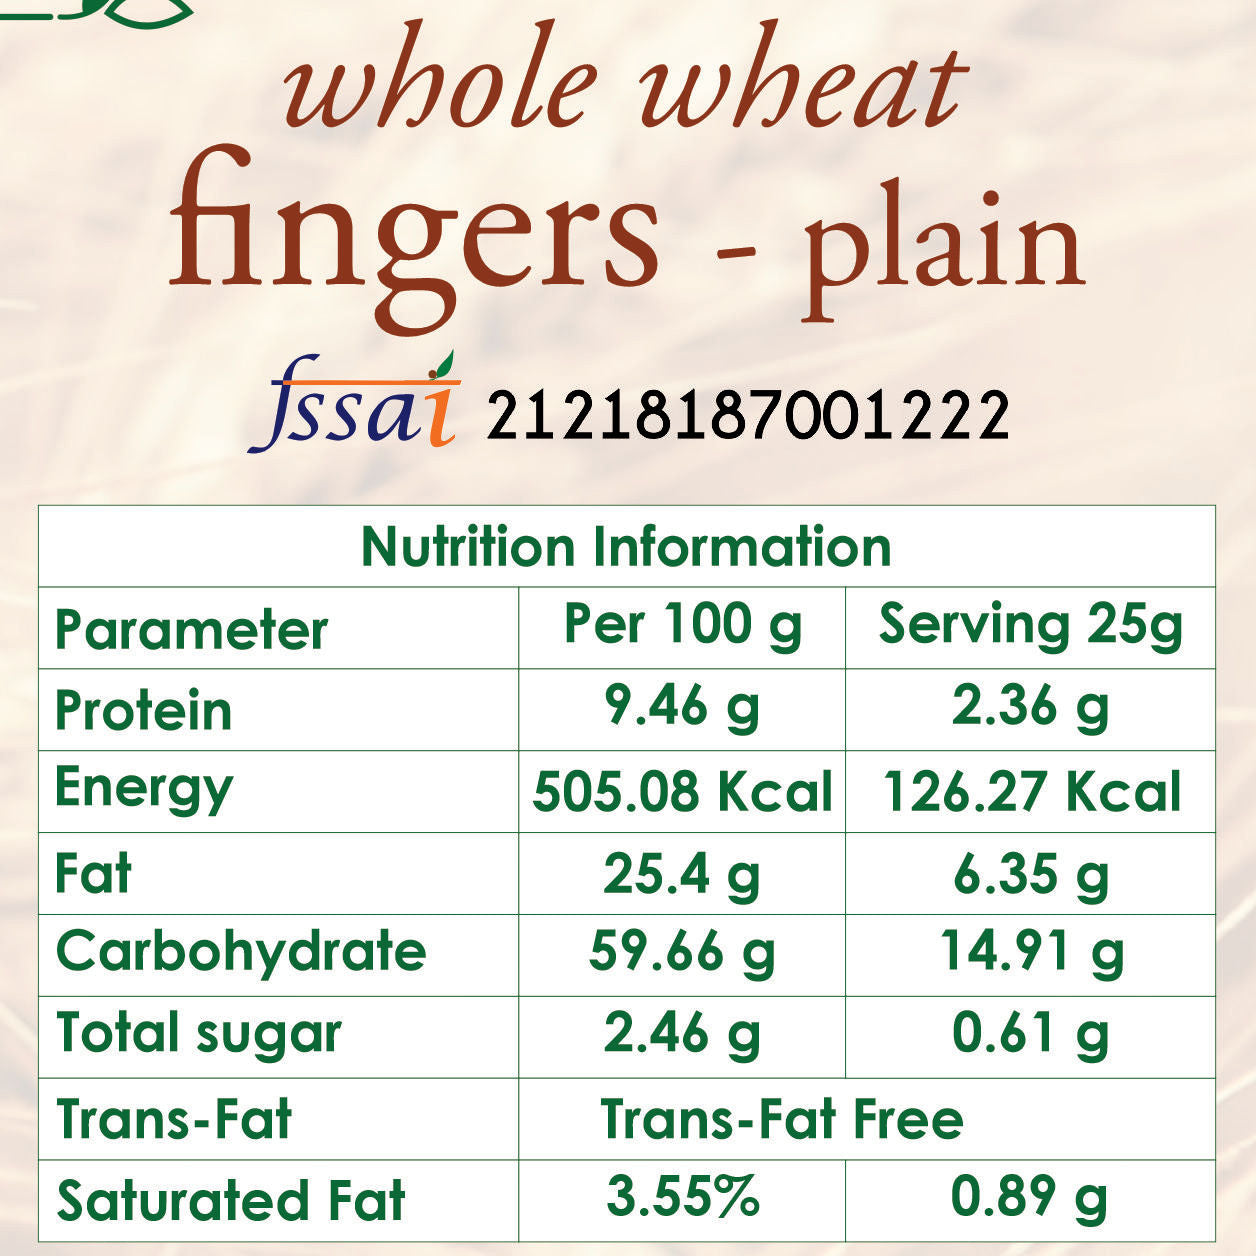 whole wheat fingers plain nutrition